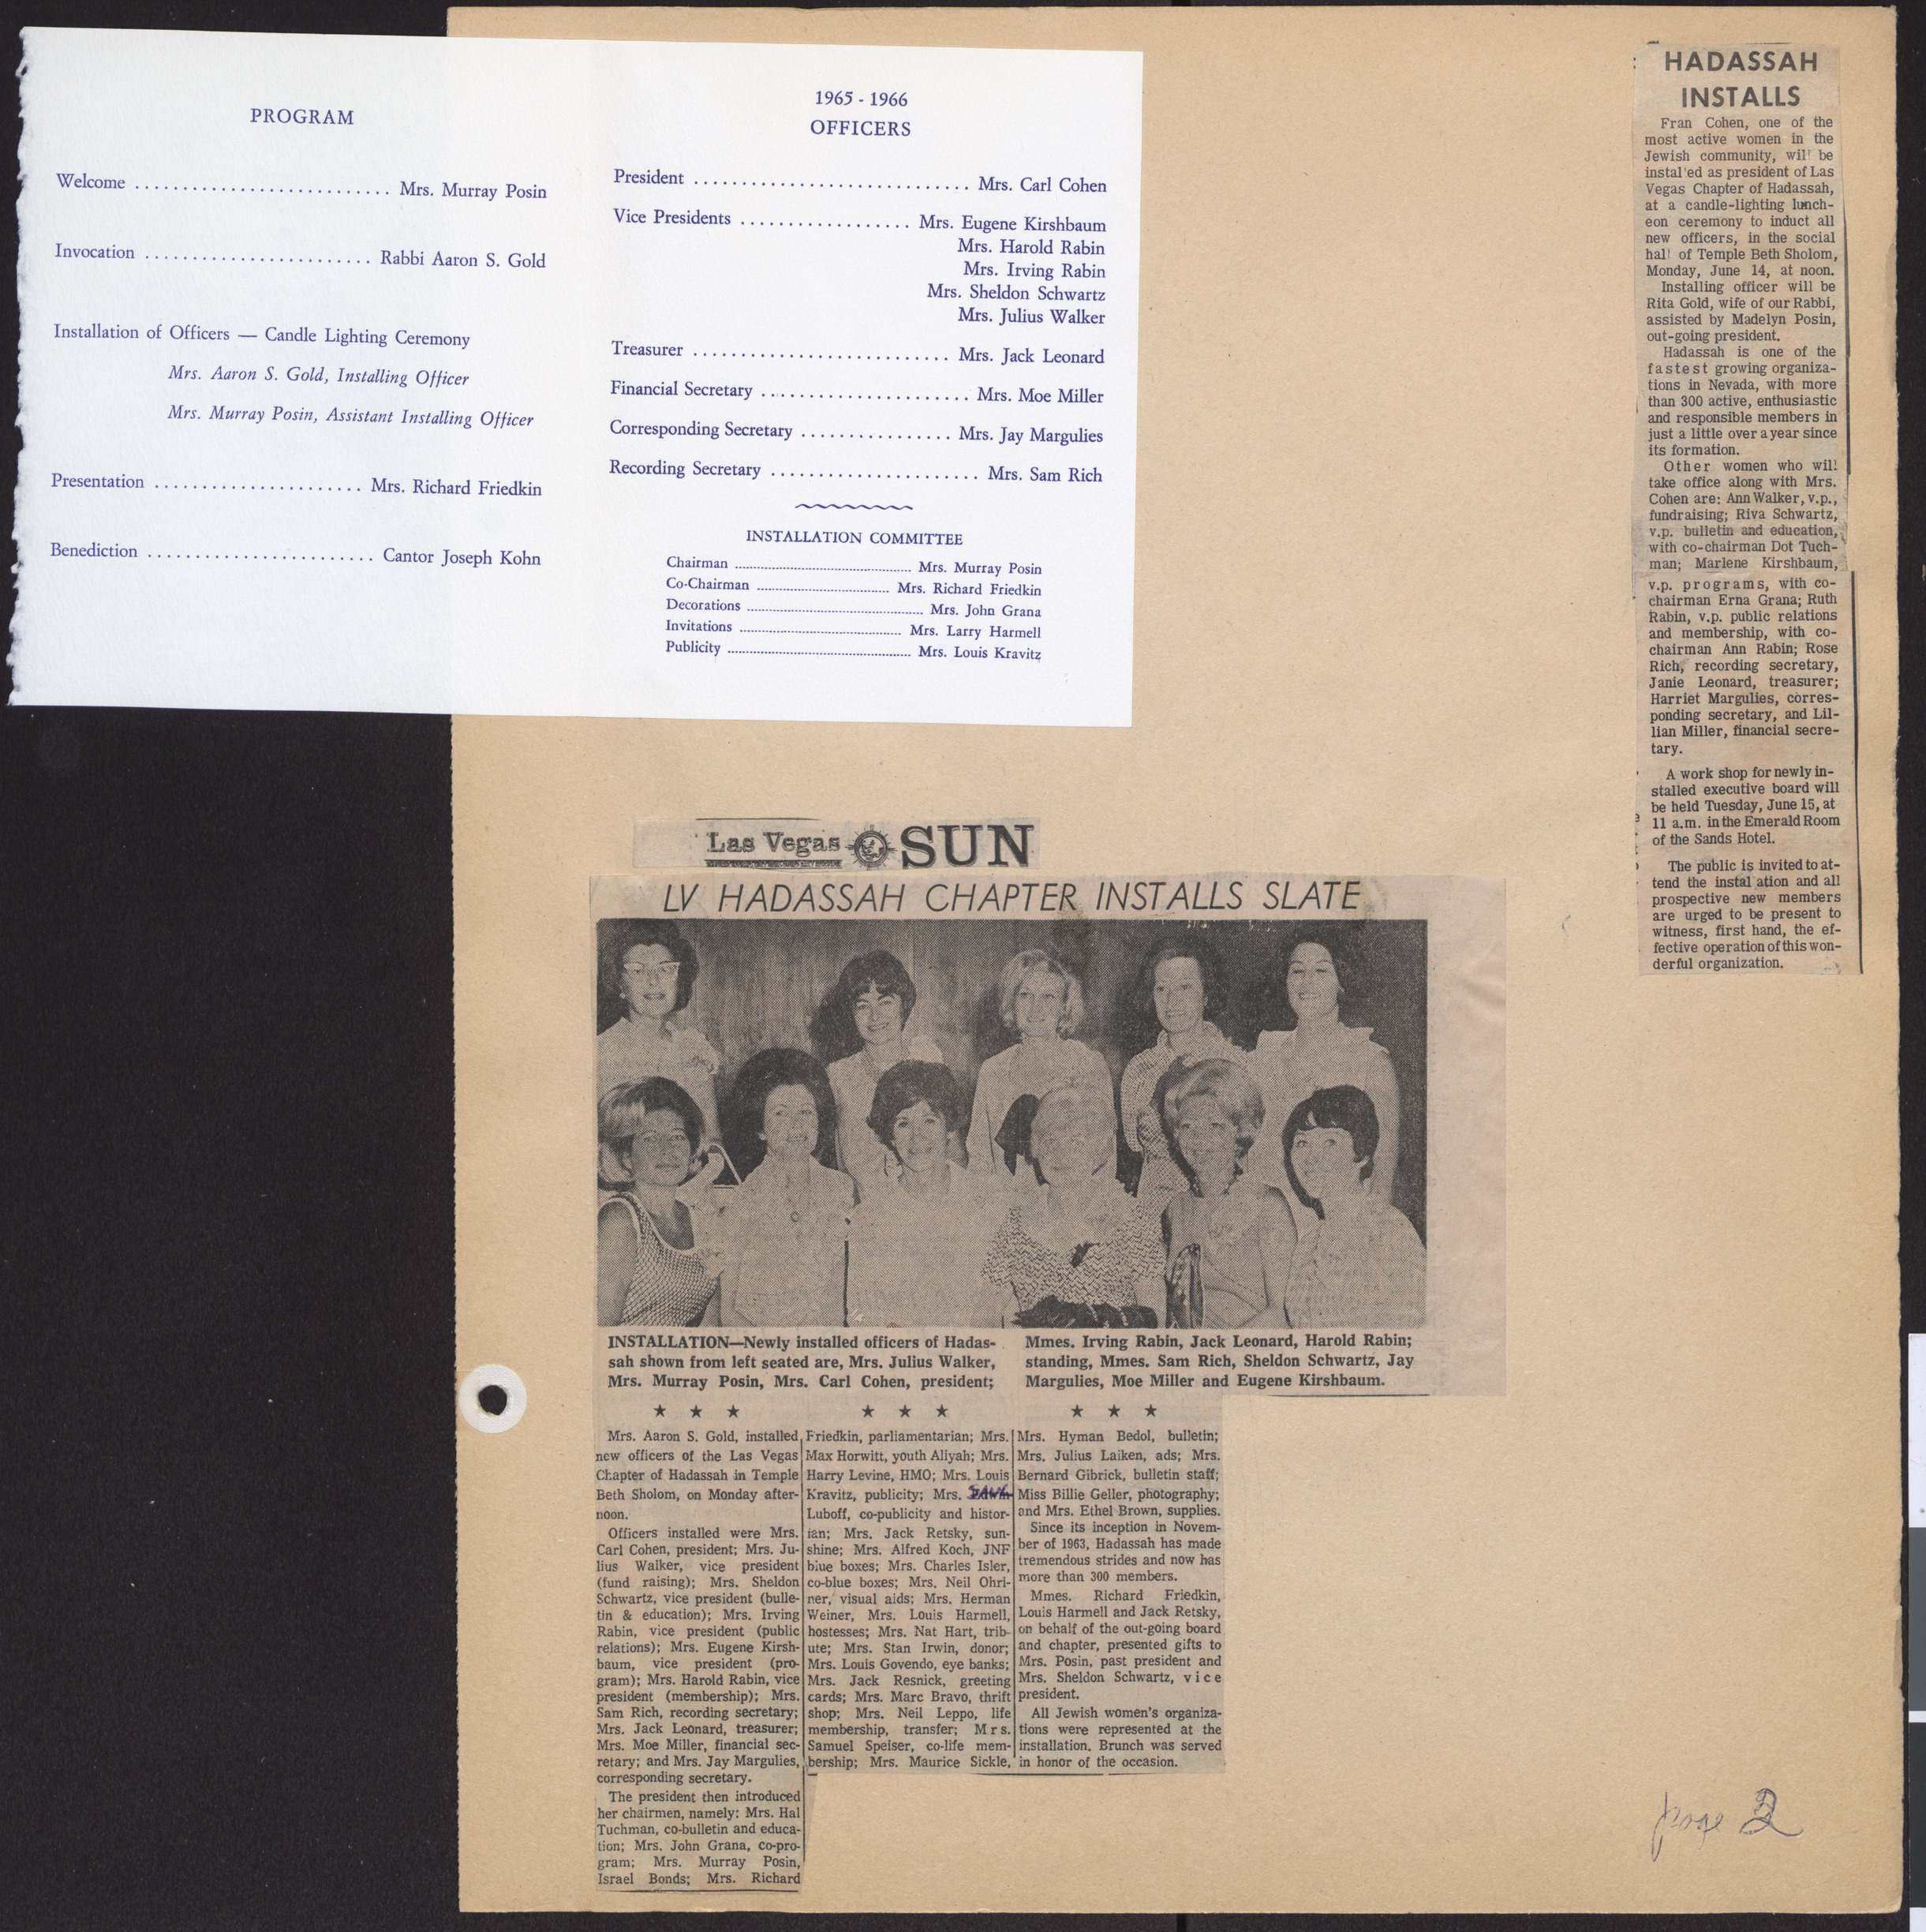 Invitation, Hadassah officers installation brunch, June 14, 1965, program and officer list